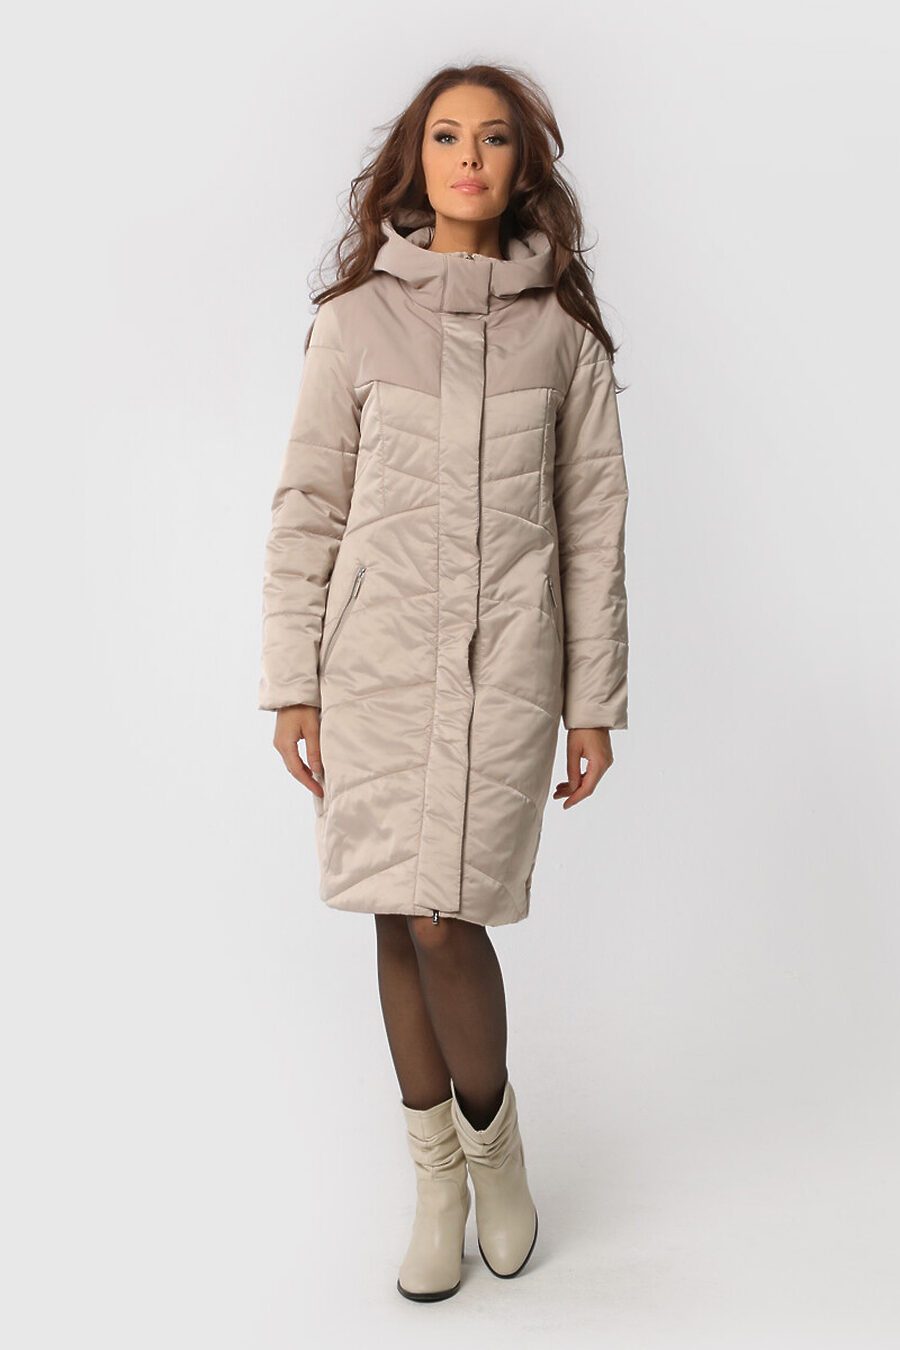 Пальто DIWAY (684812), купить в Moyo.moda